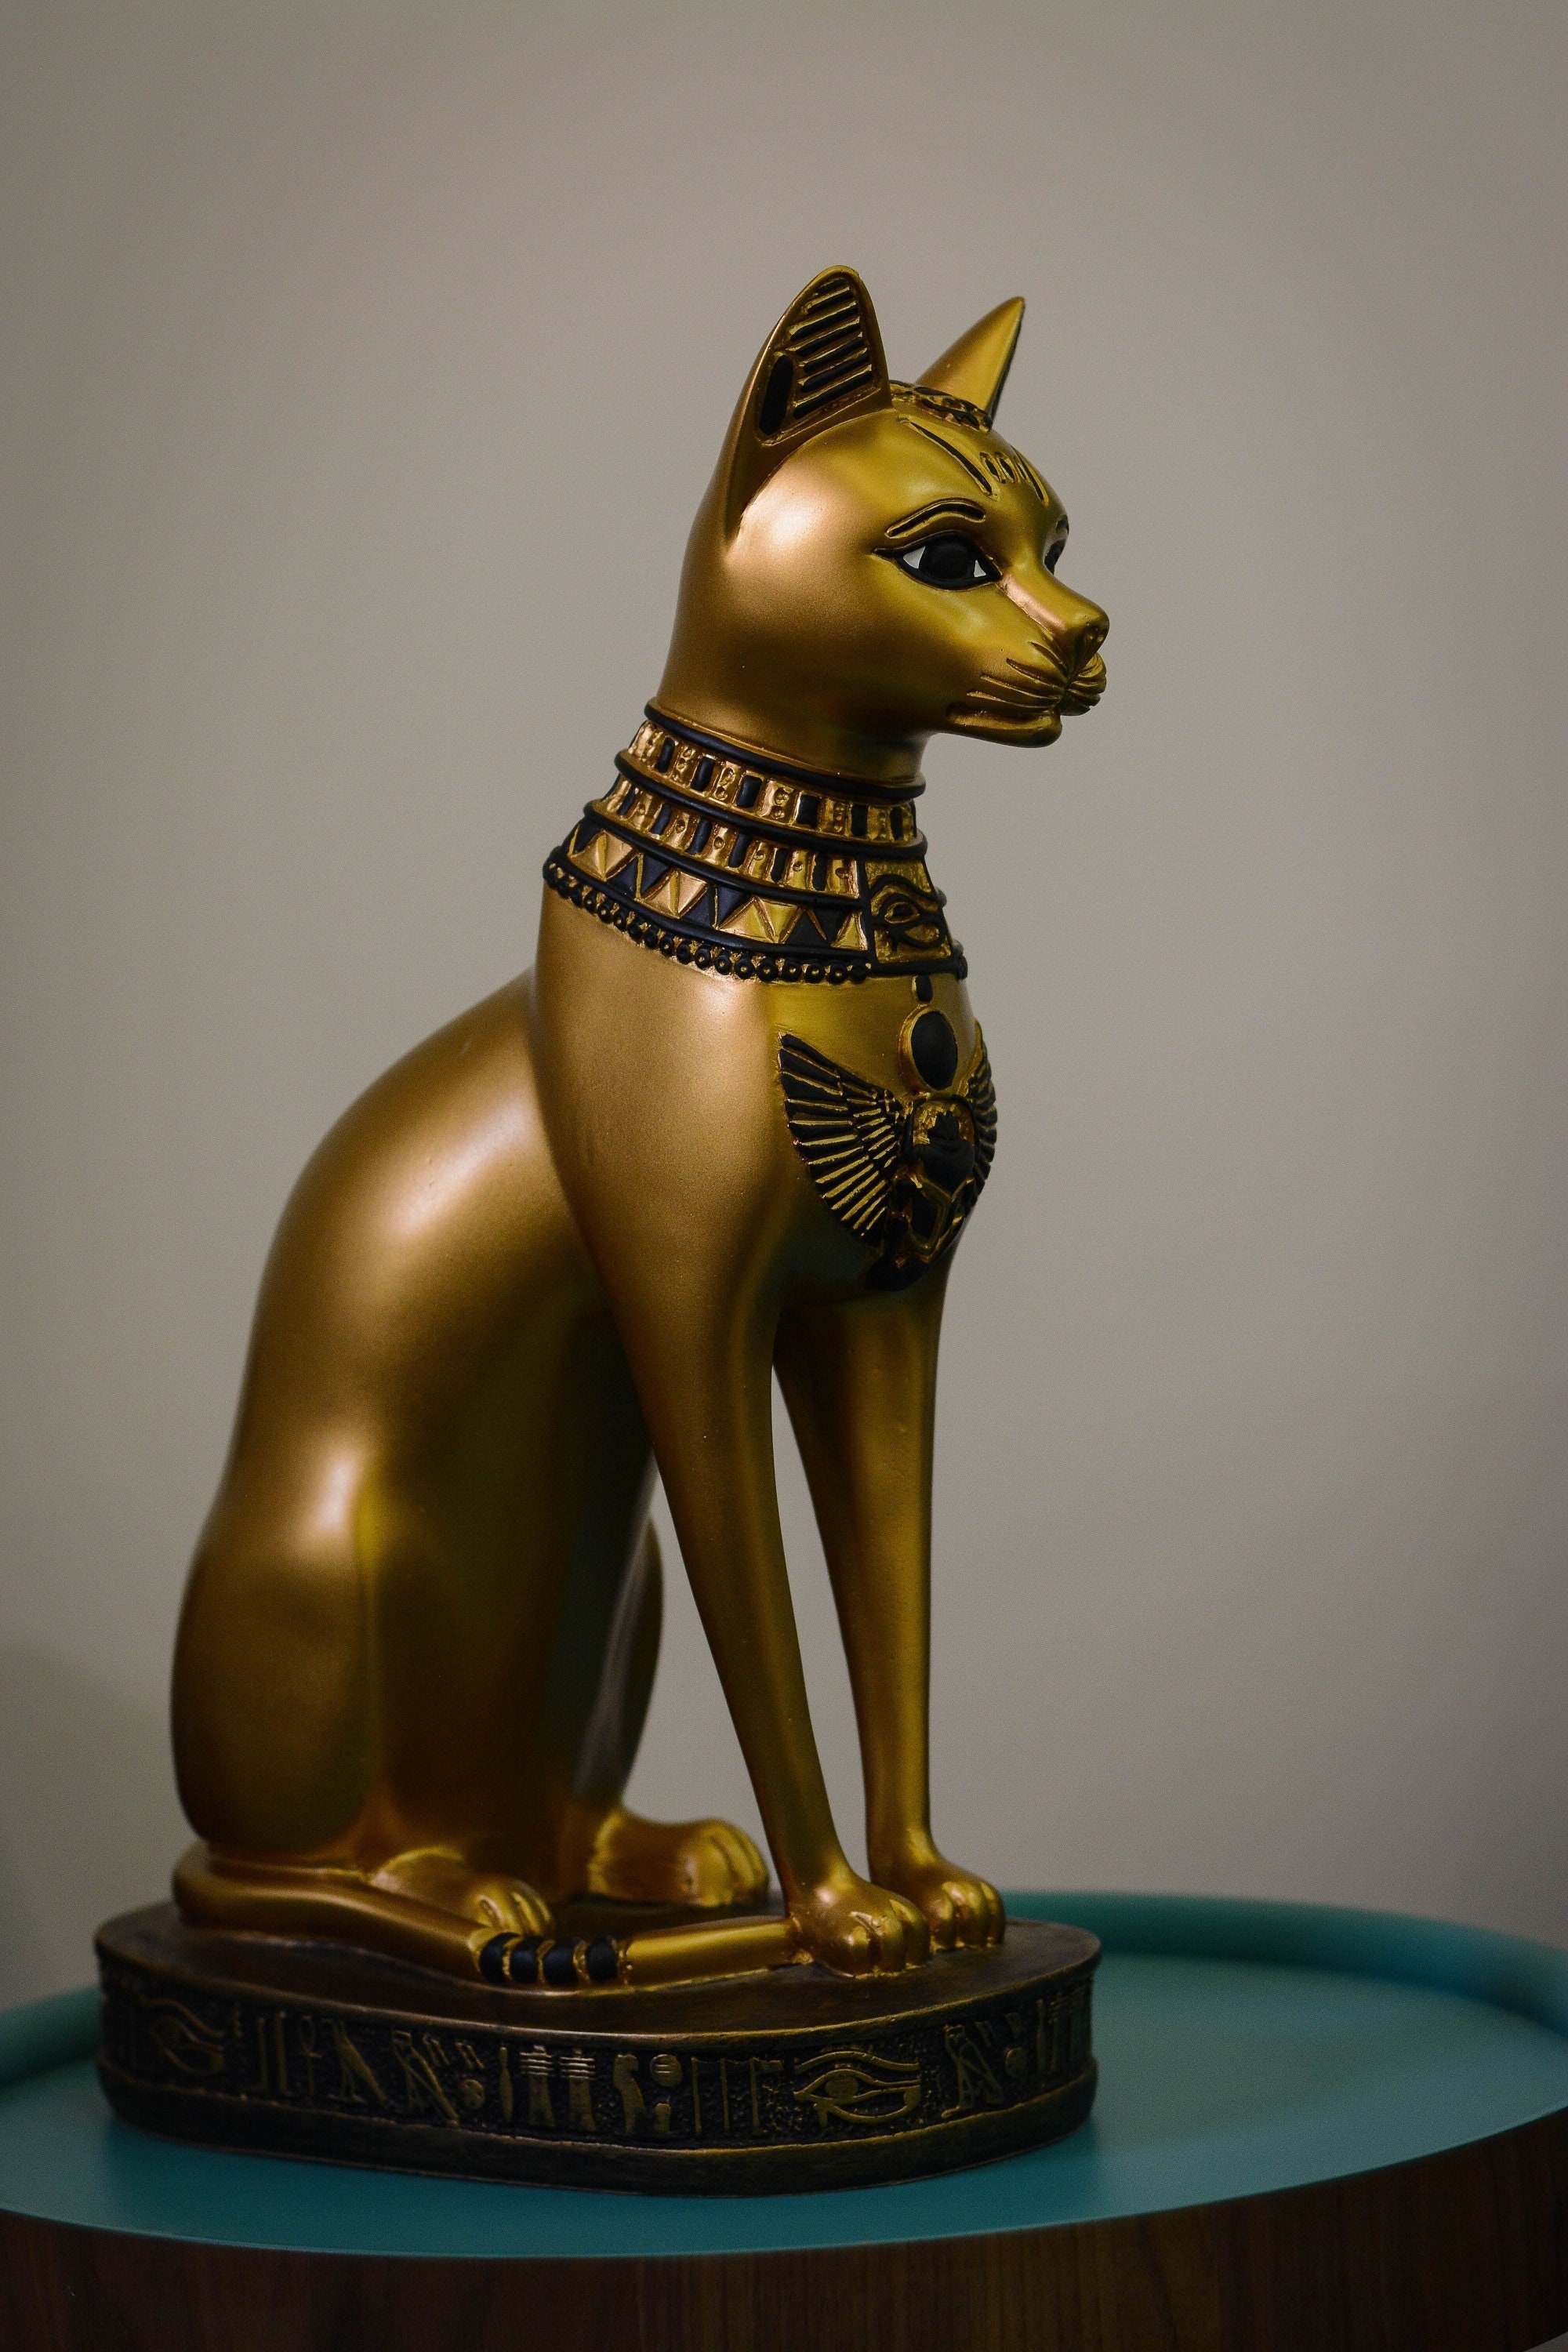 Golden Cheetah Statue Luxurious Gold Plated Cheetah Sculpture Luxurious  Animal Figurines Art Sculpture Handmade Custom Gift Decor 